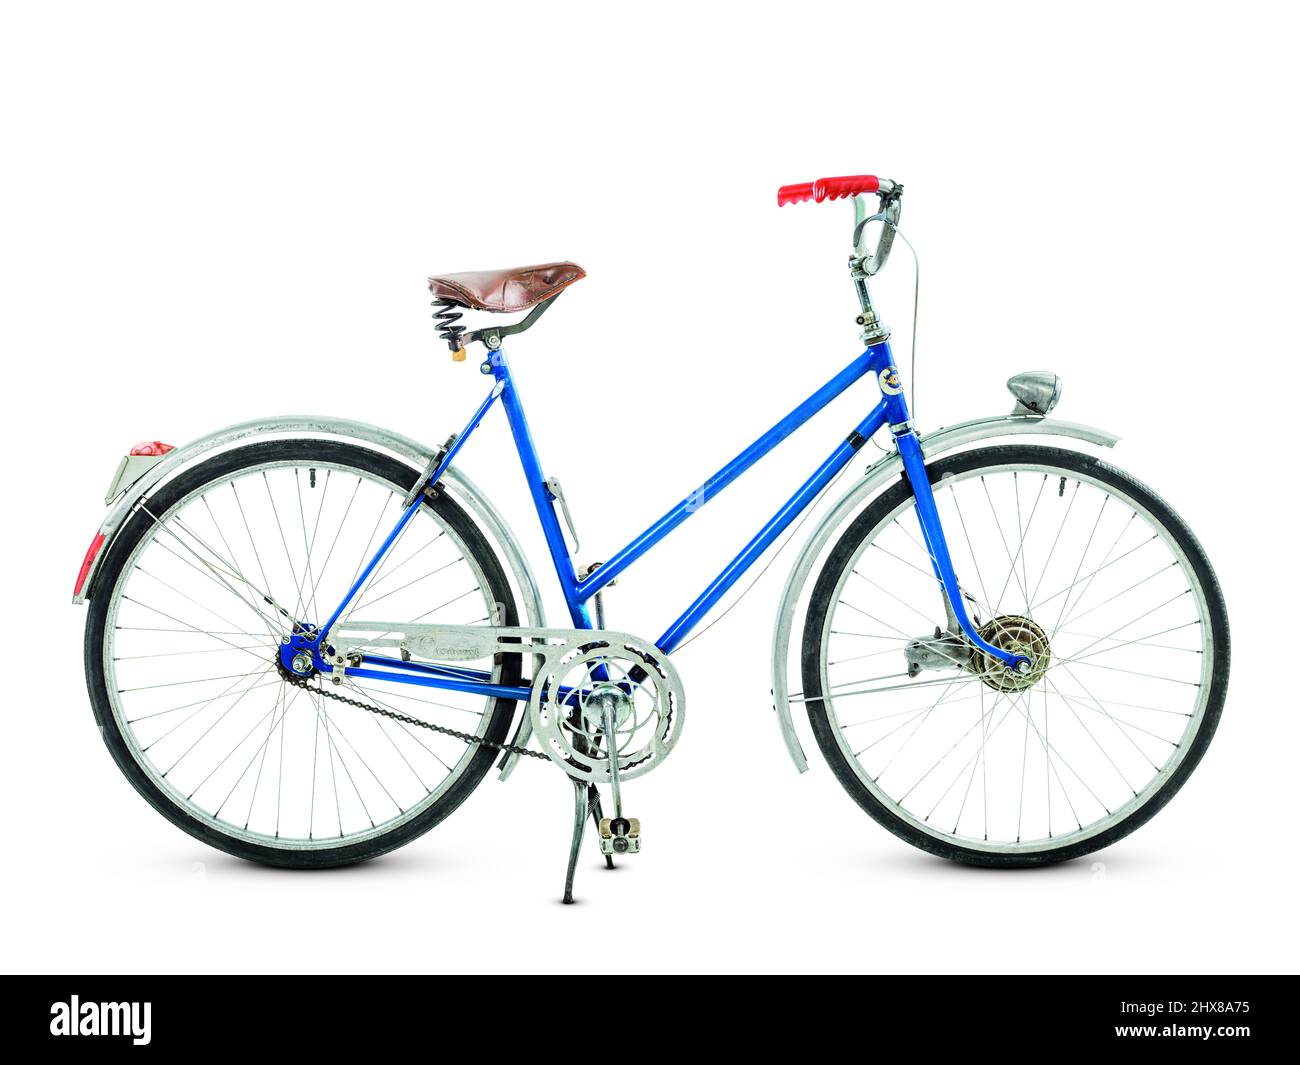 Bicicletta Crescent, c.1955, USA, vista laterale, sul supporto. Design innovativo con maniglia di sollevamento e supporto. Freni a pedale posteriori, kit dinamometro azionato dal mozzo. Protezione catena in lega. Foto Stock